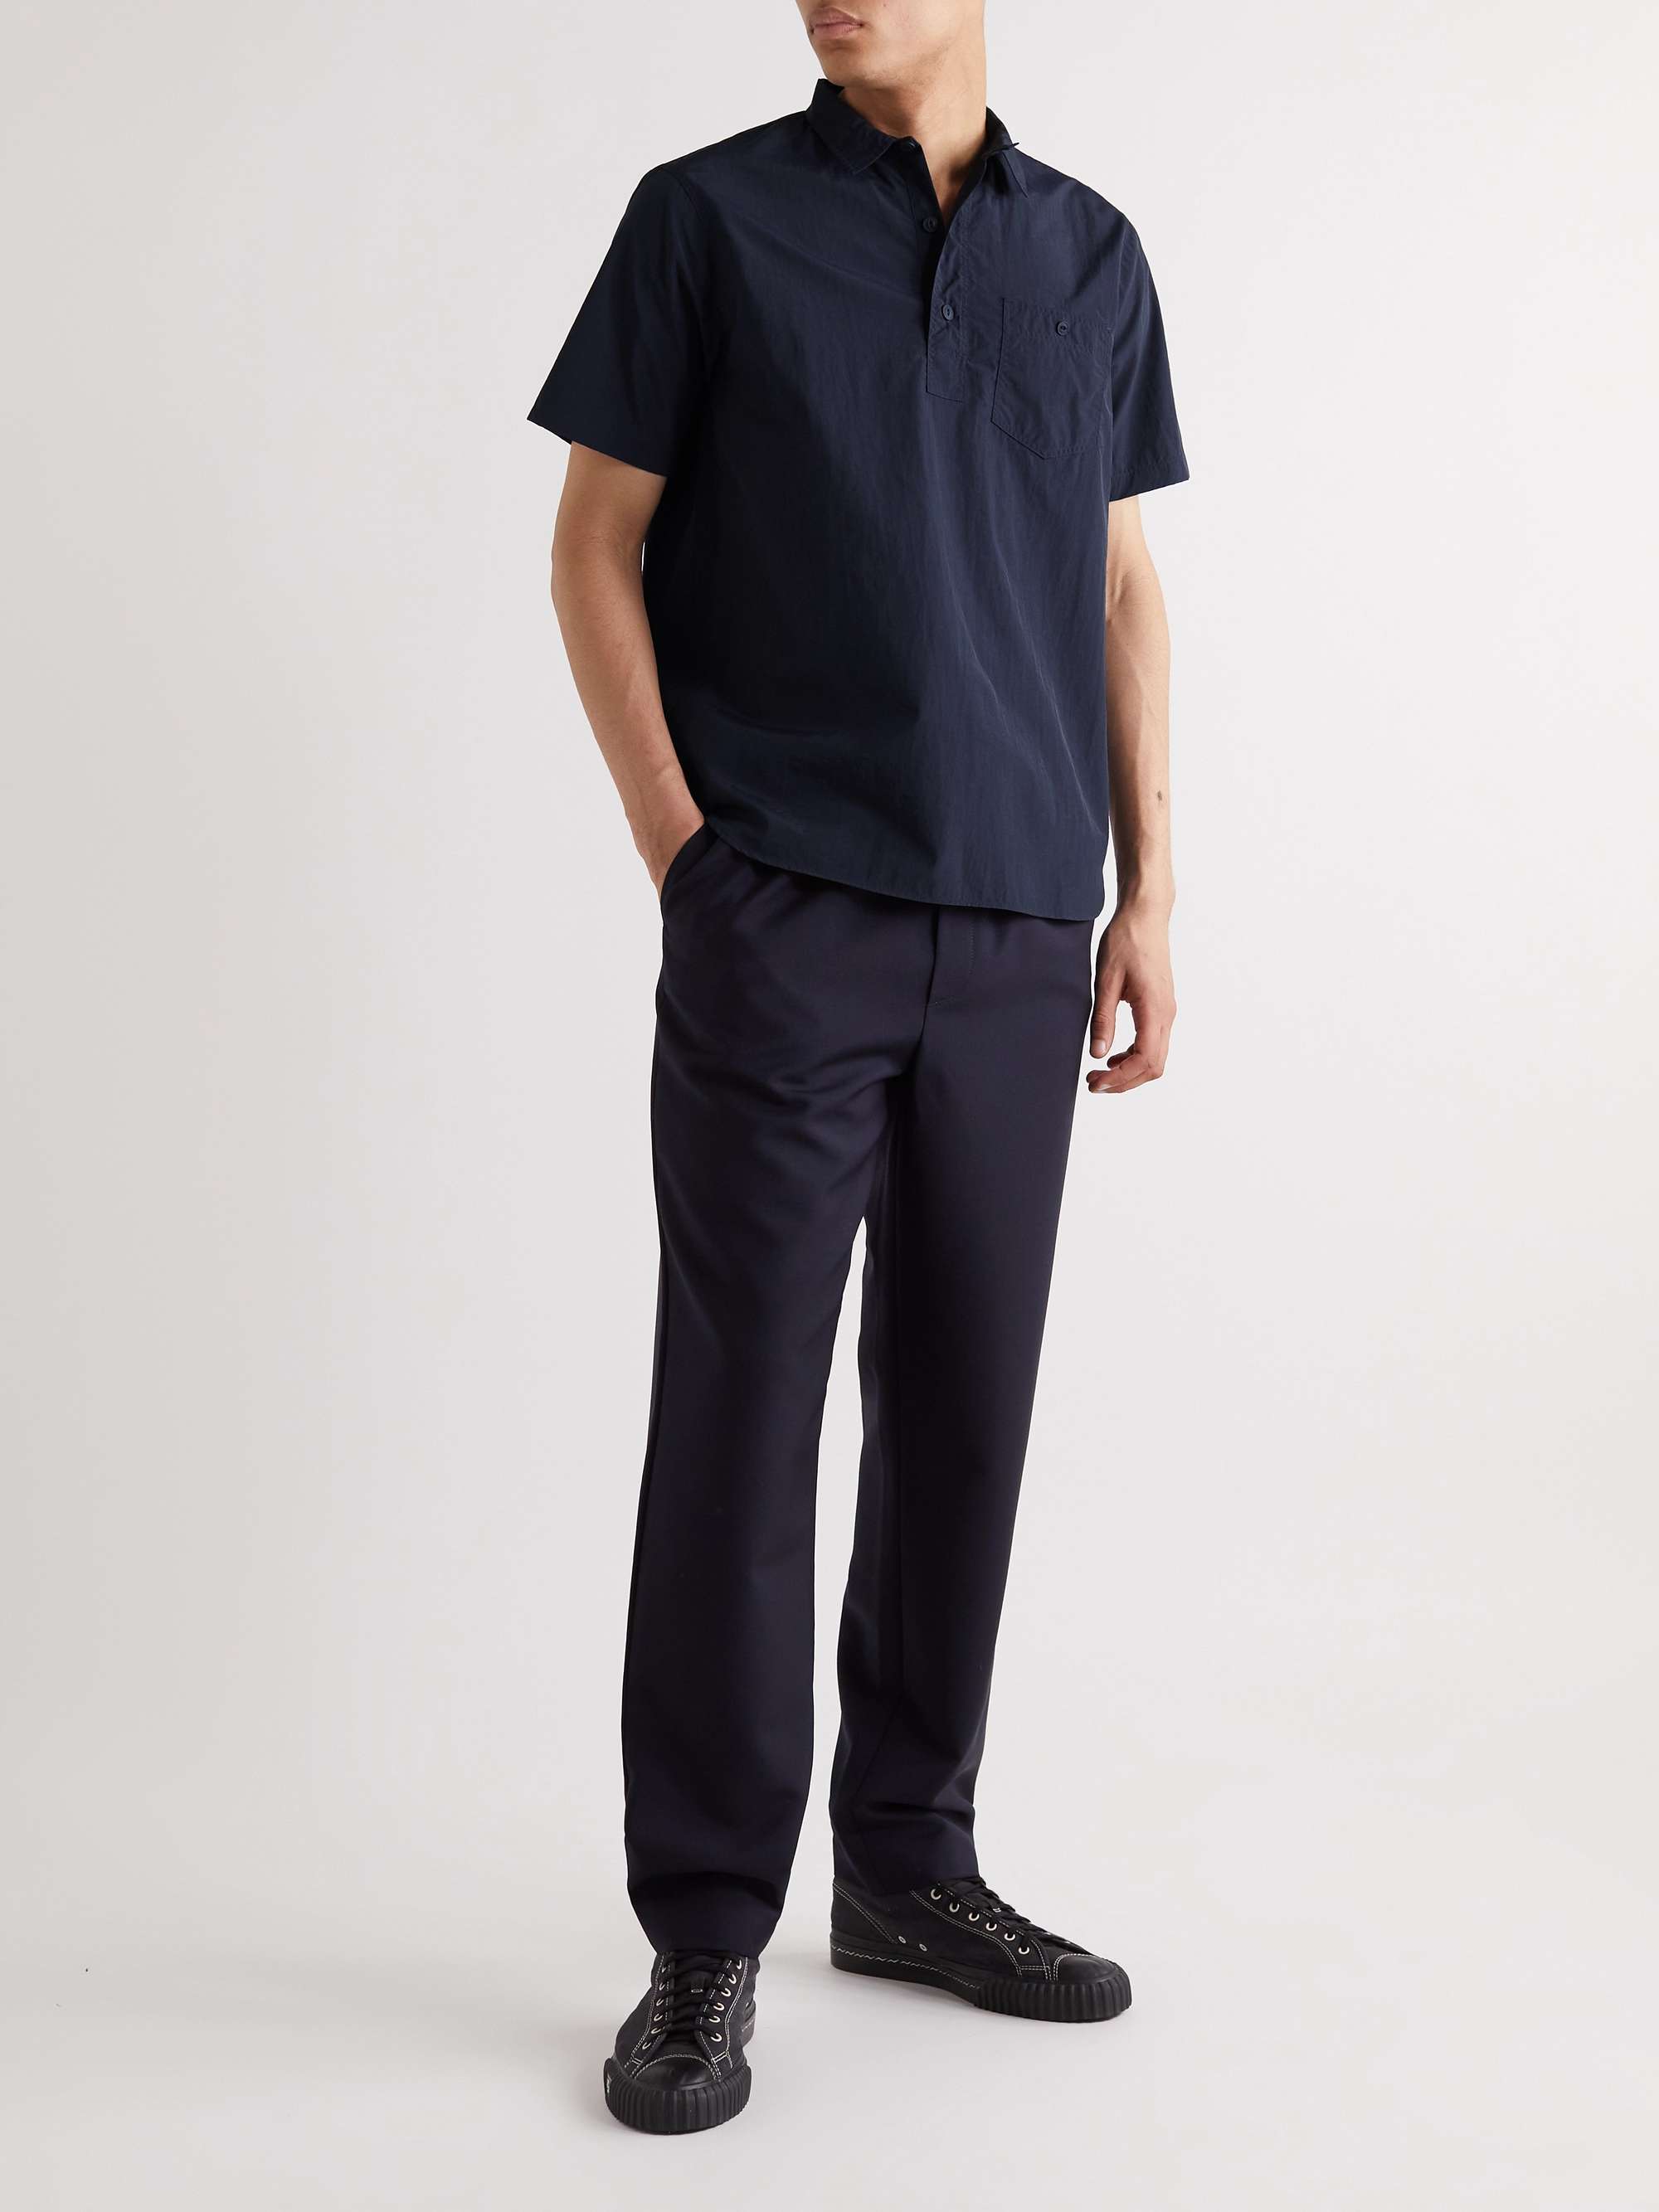 KESTIN Granton Shell Polo Shirt for Men | MR PORTER